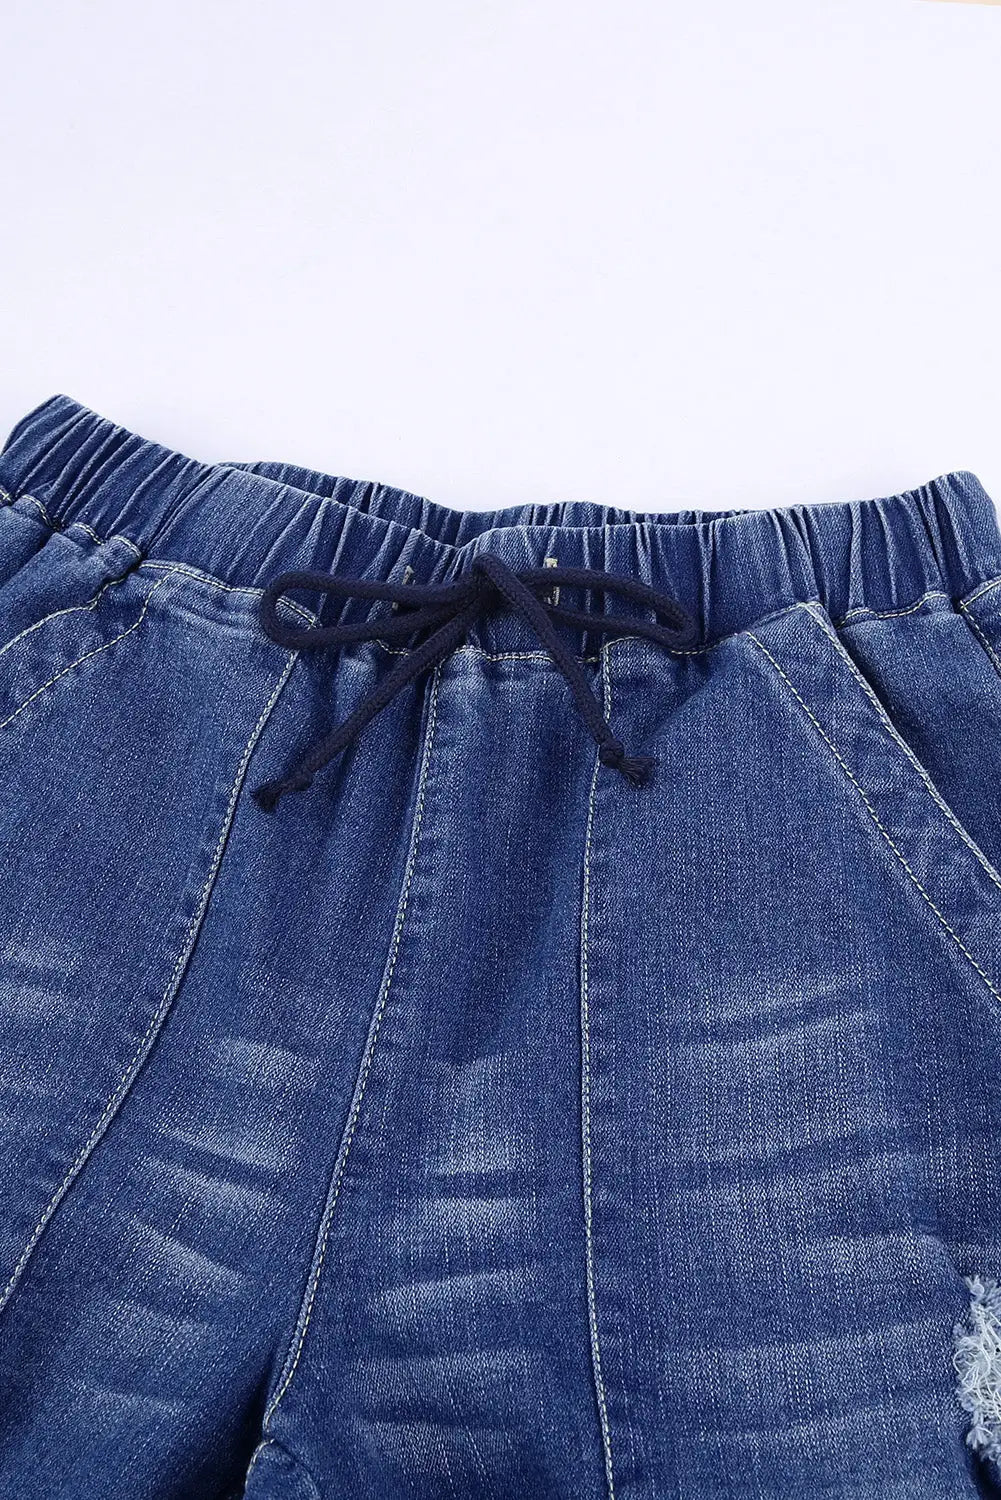 Black pocketed distressed denim jean - bottoms